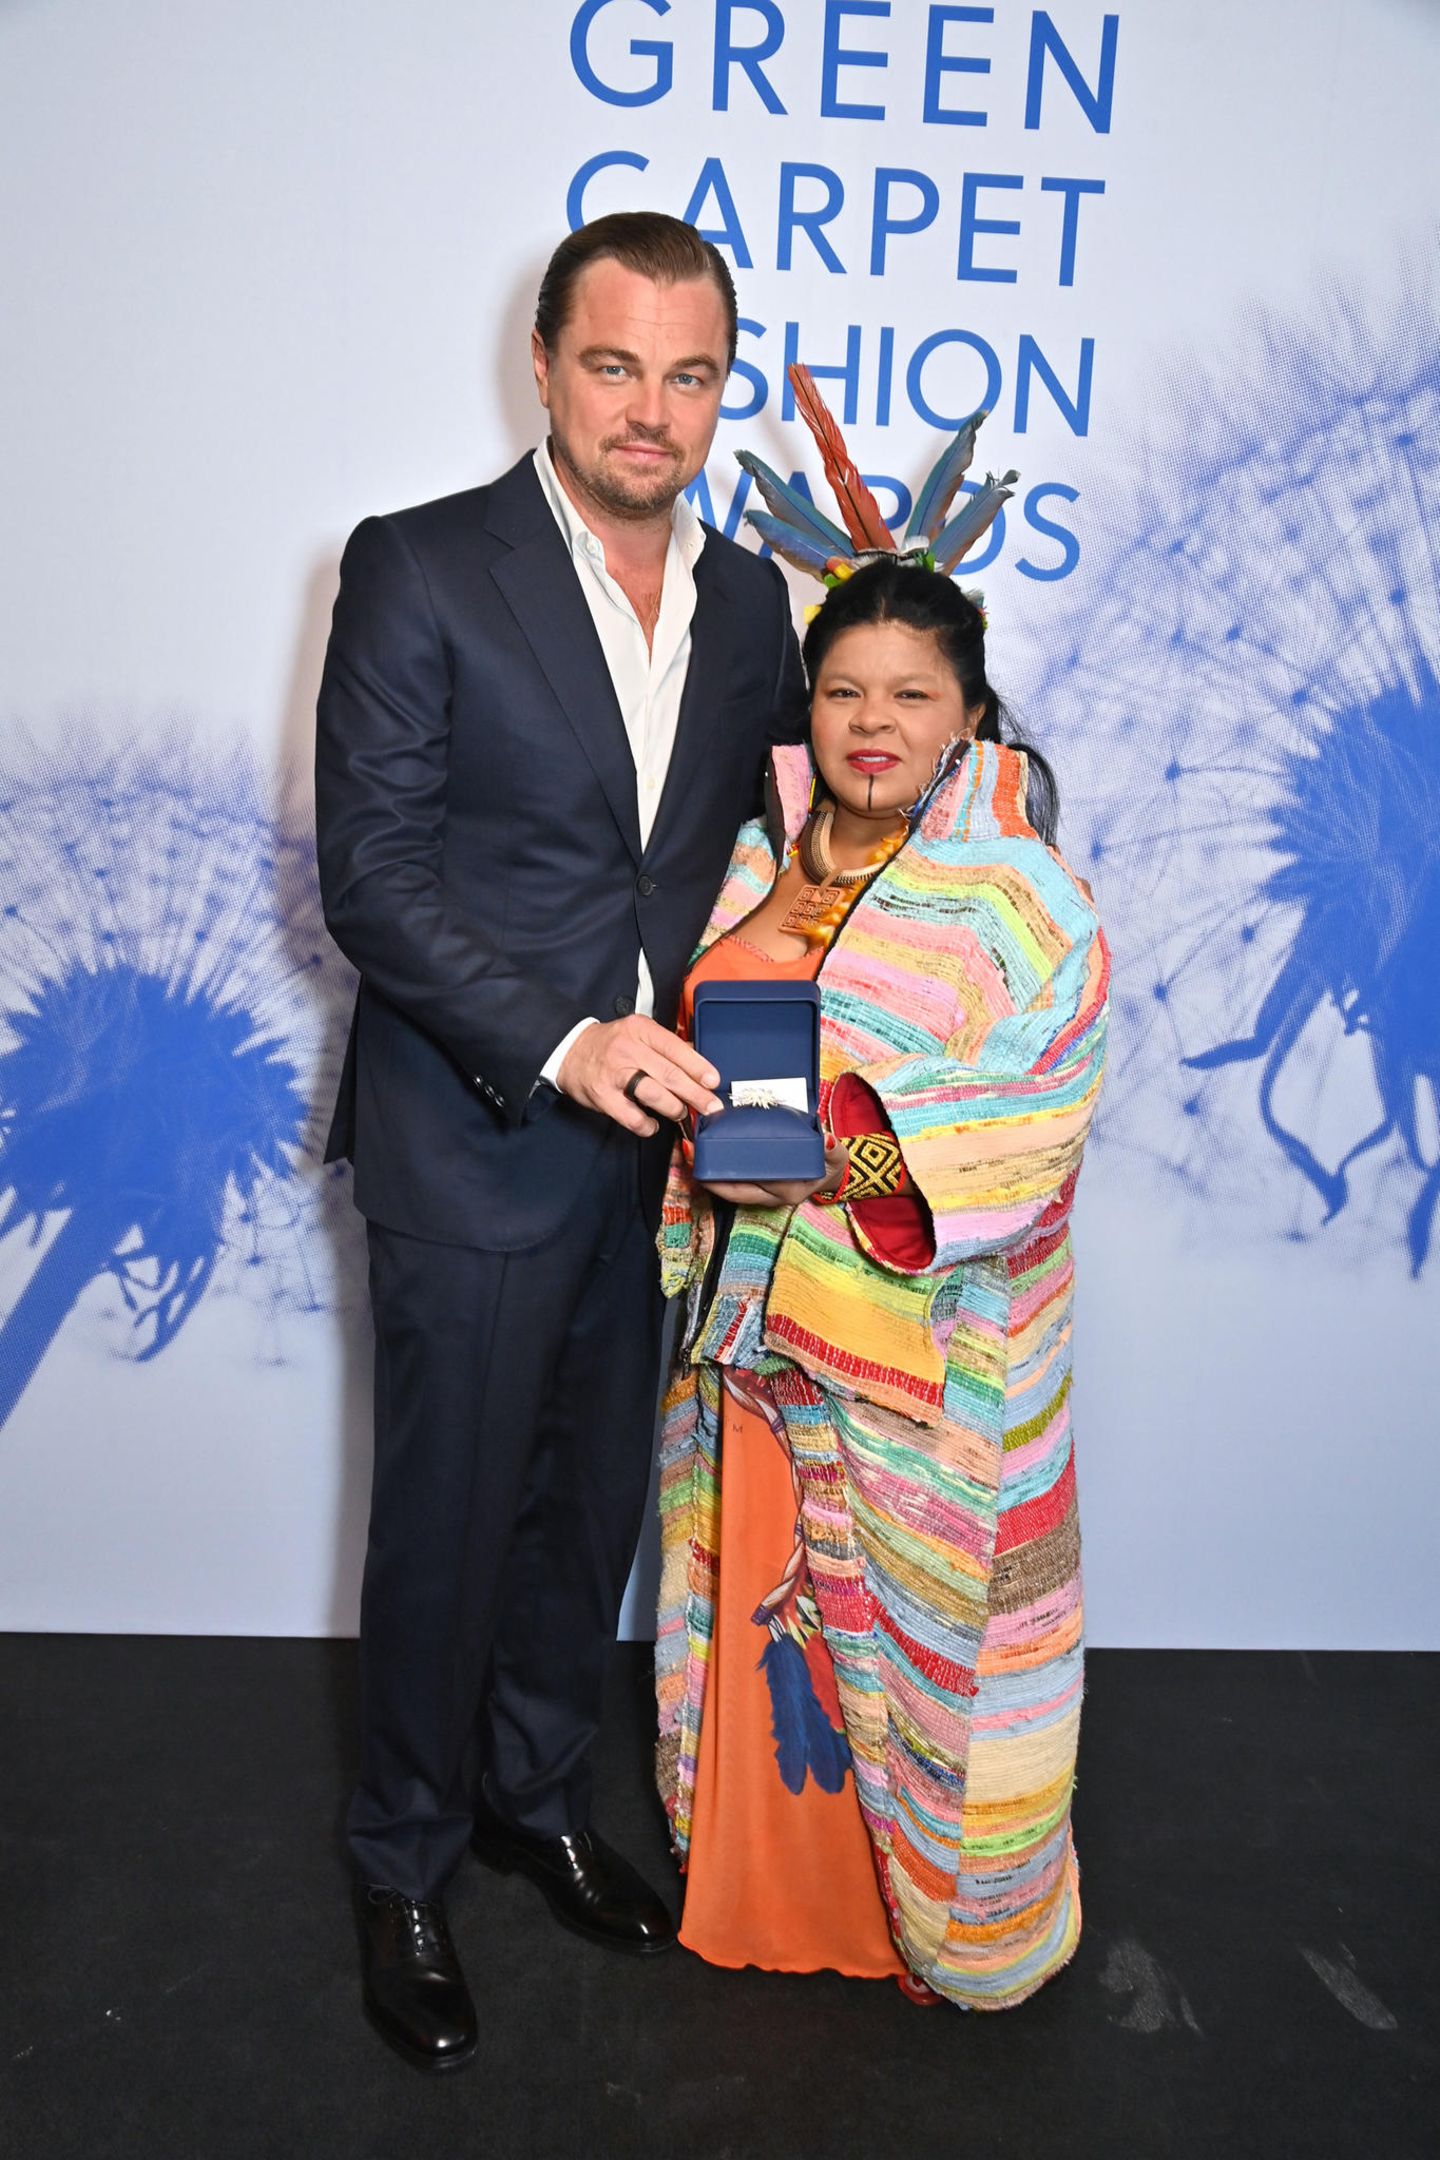 Auch Leonardo DiCaprio nimmt an der Veranstaltung teil und posiert mit Sonia Guajajara, der Ministerin für indigene Völker Brasiliens, im sogenannten "Winner's Room".